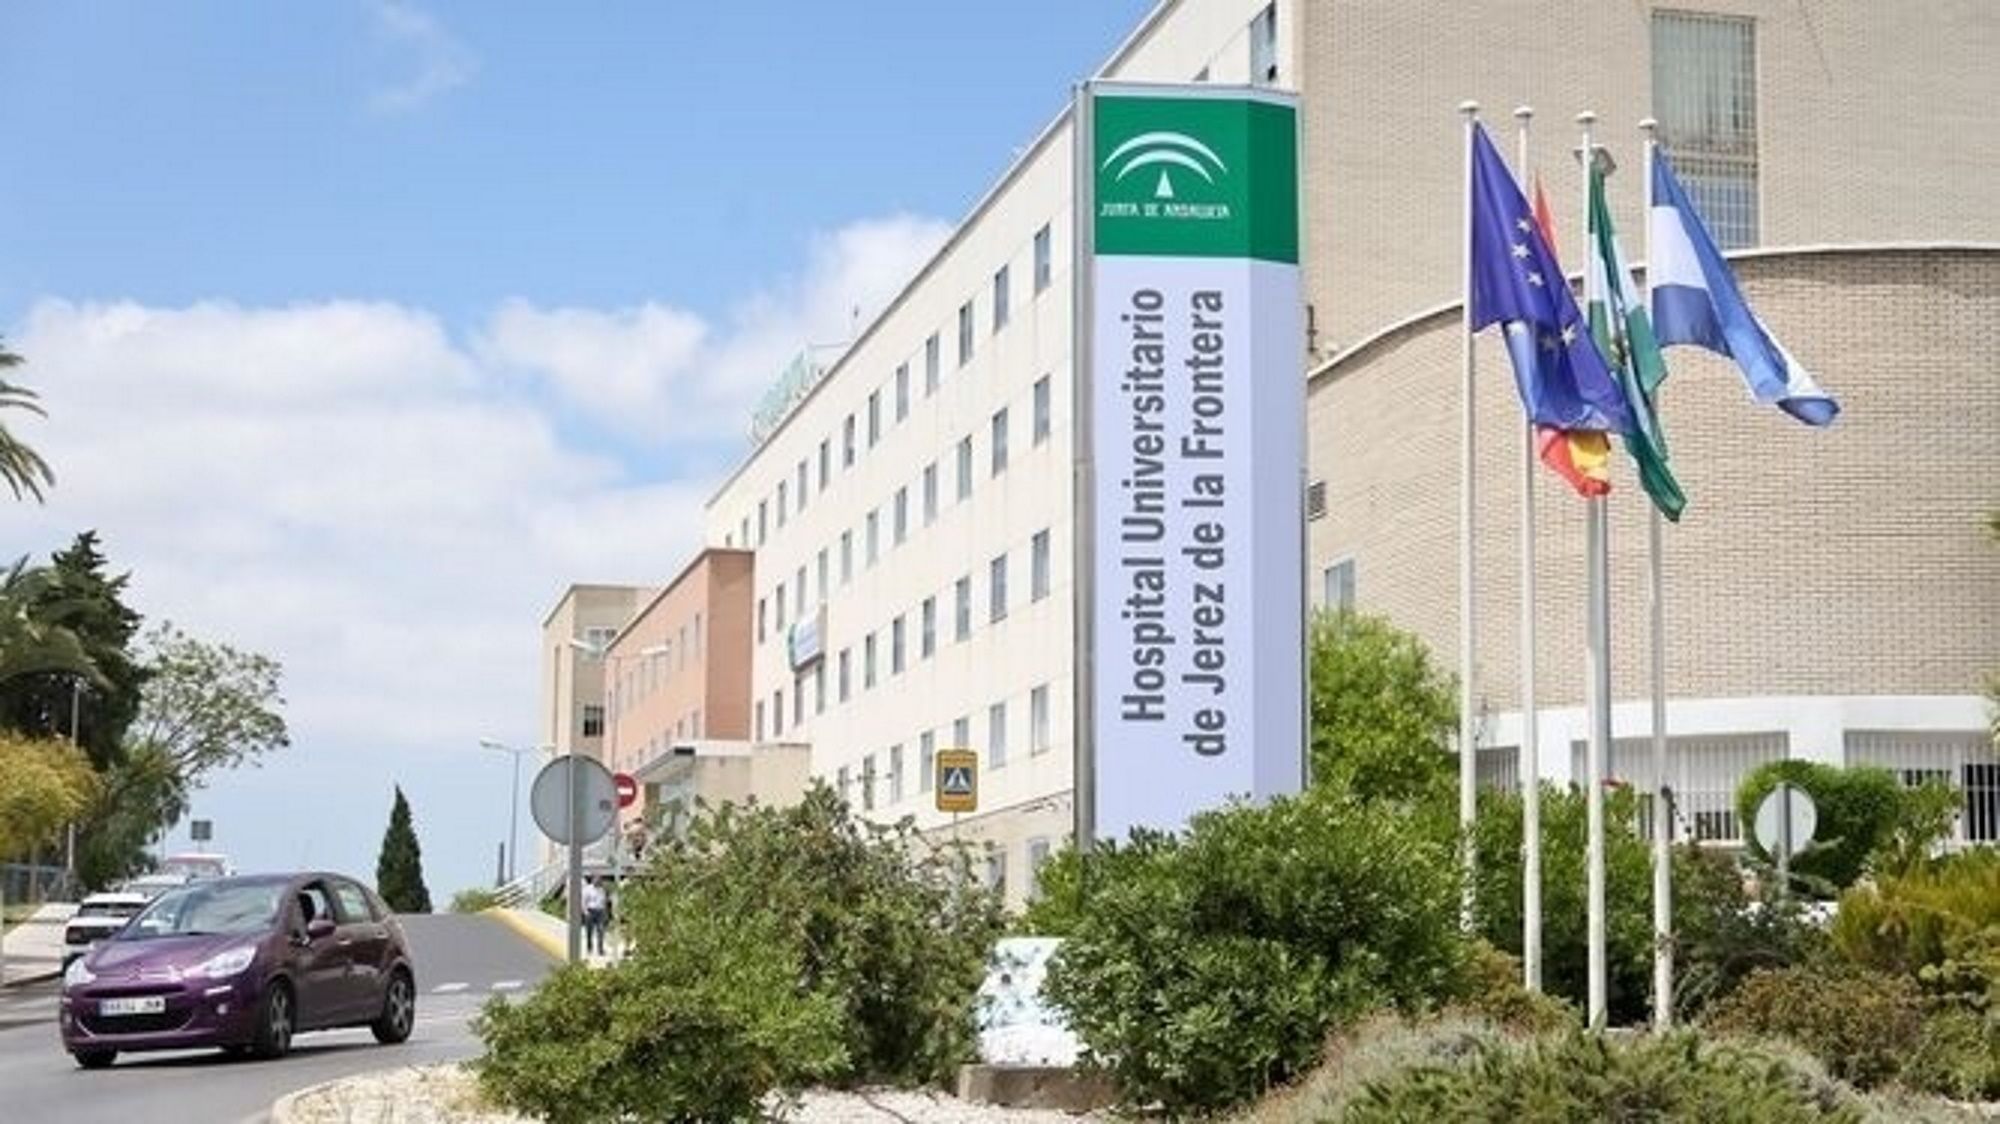 hospital universitario jerez de la frontera cadiz hombre agrede enfermeras amenaza violar matar europa press